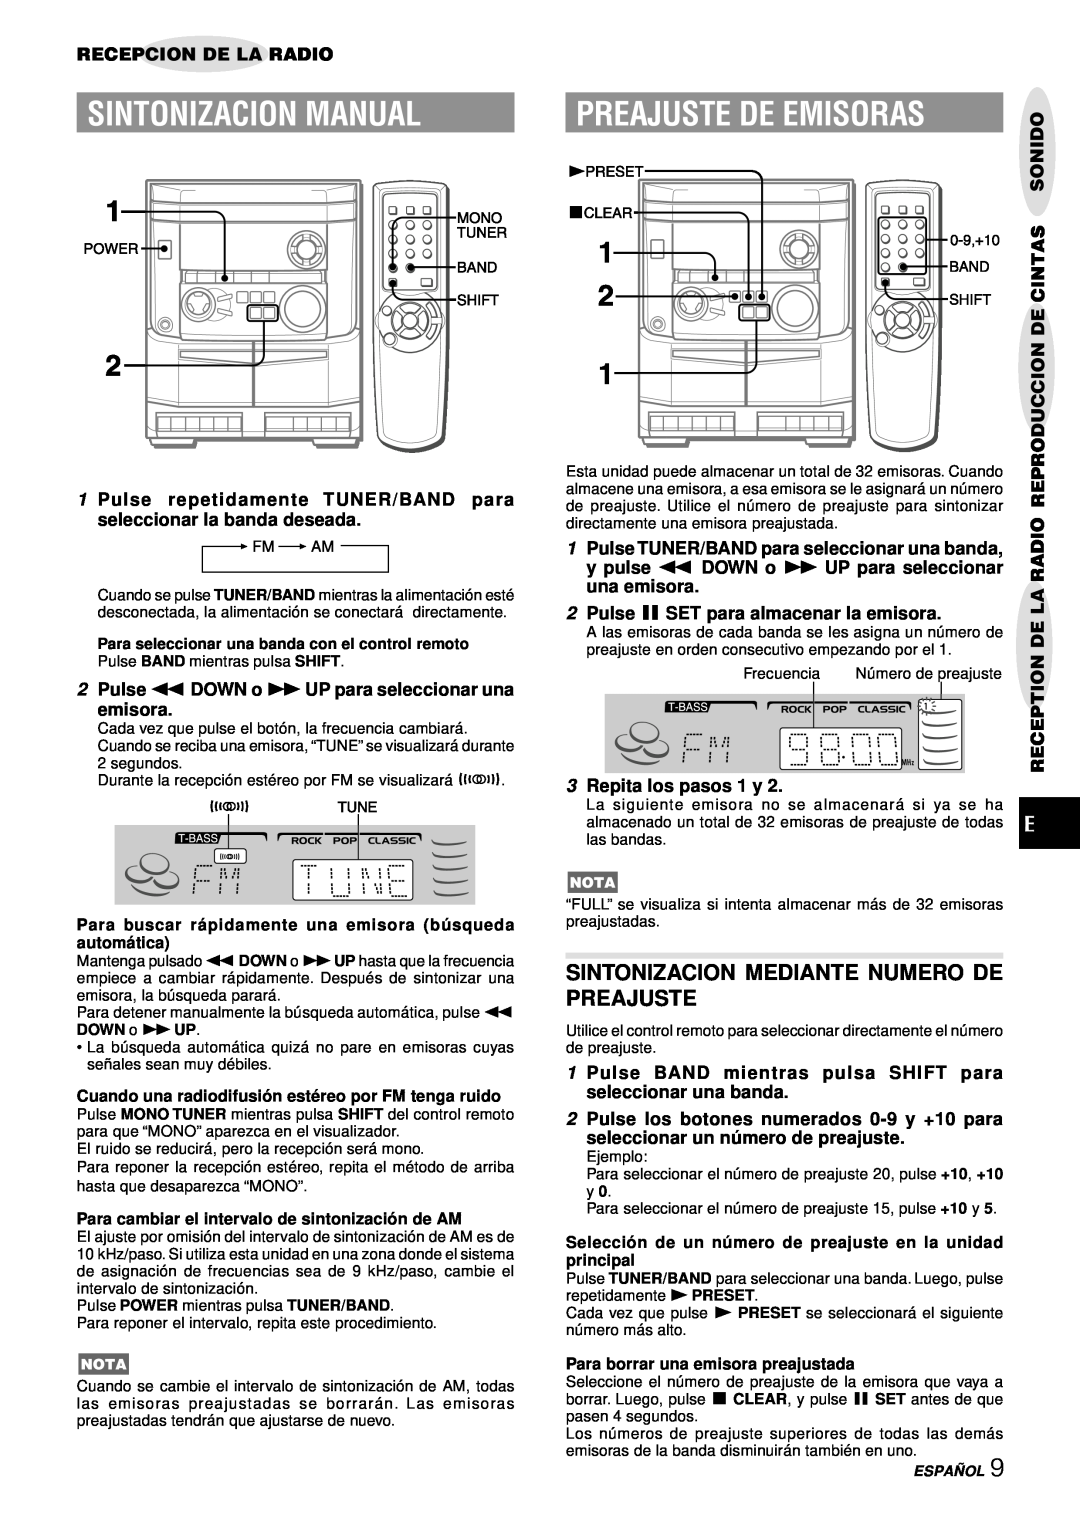 Aiwa NSX-AJ14 Sintonizacion Manual, Preajuste De Emisoras, Sintonizacion Mediante Numero De Preajuste 